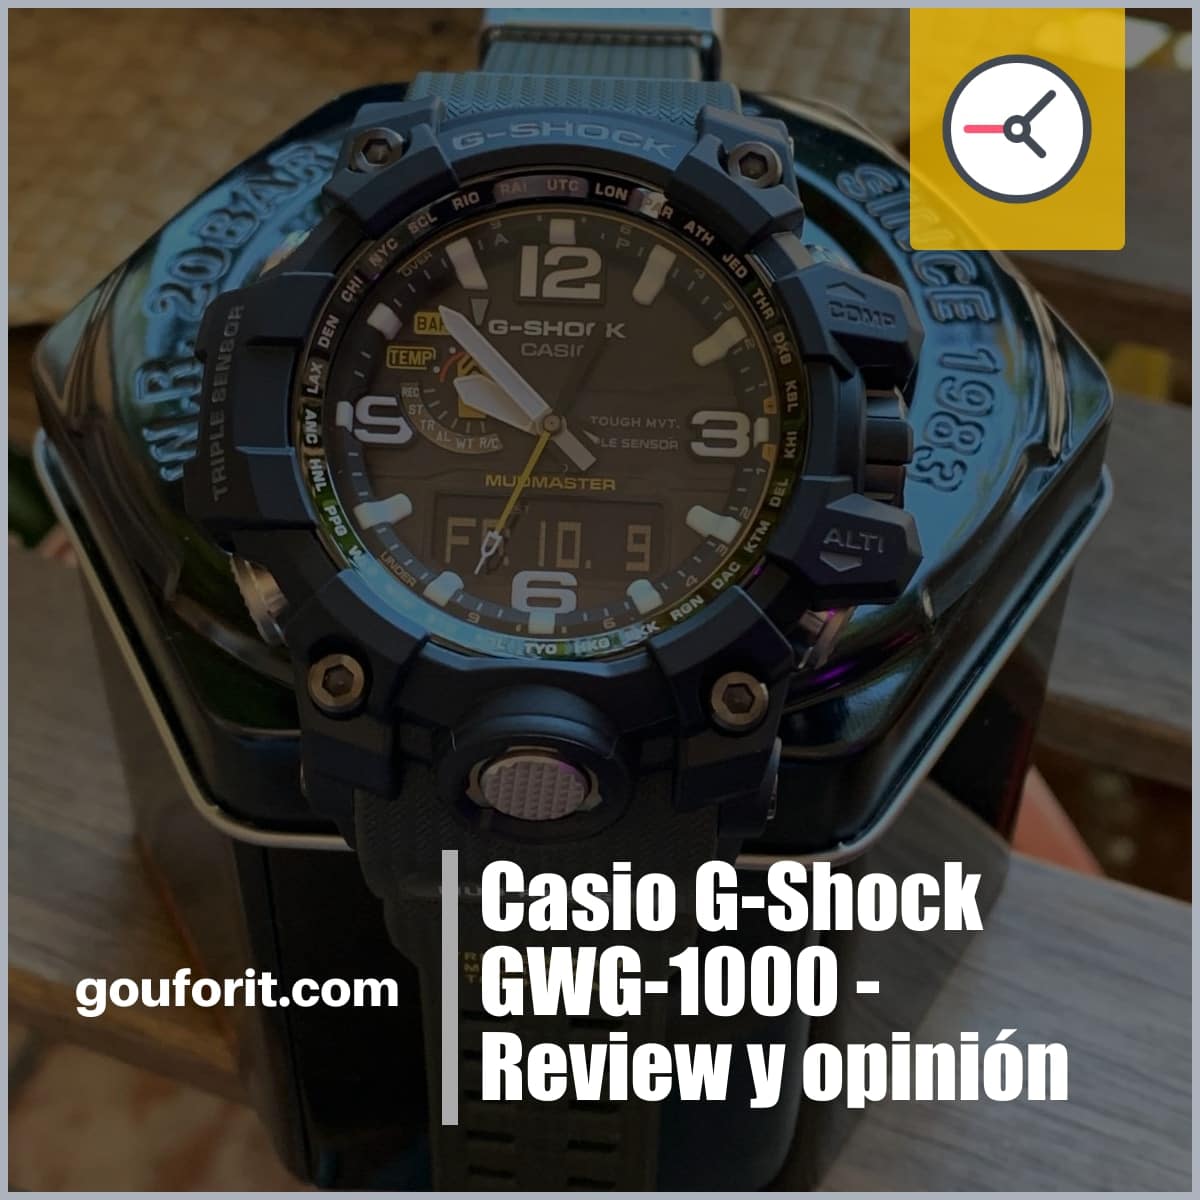 Casio G-Shock GWG-1000 - Review y opinión